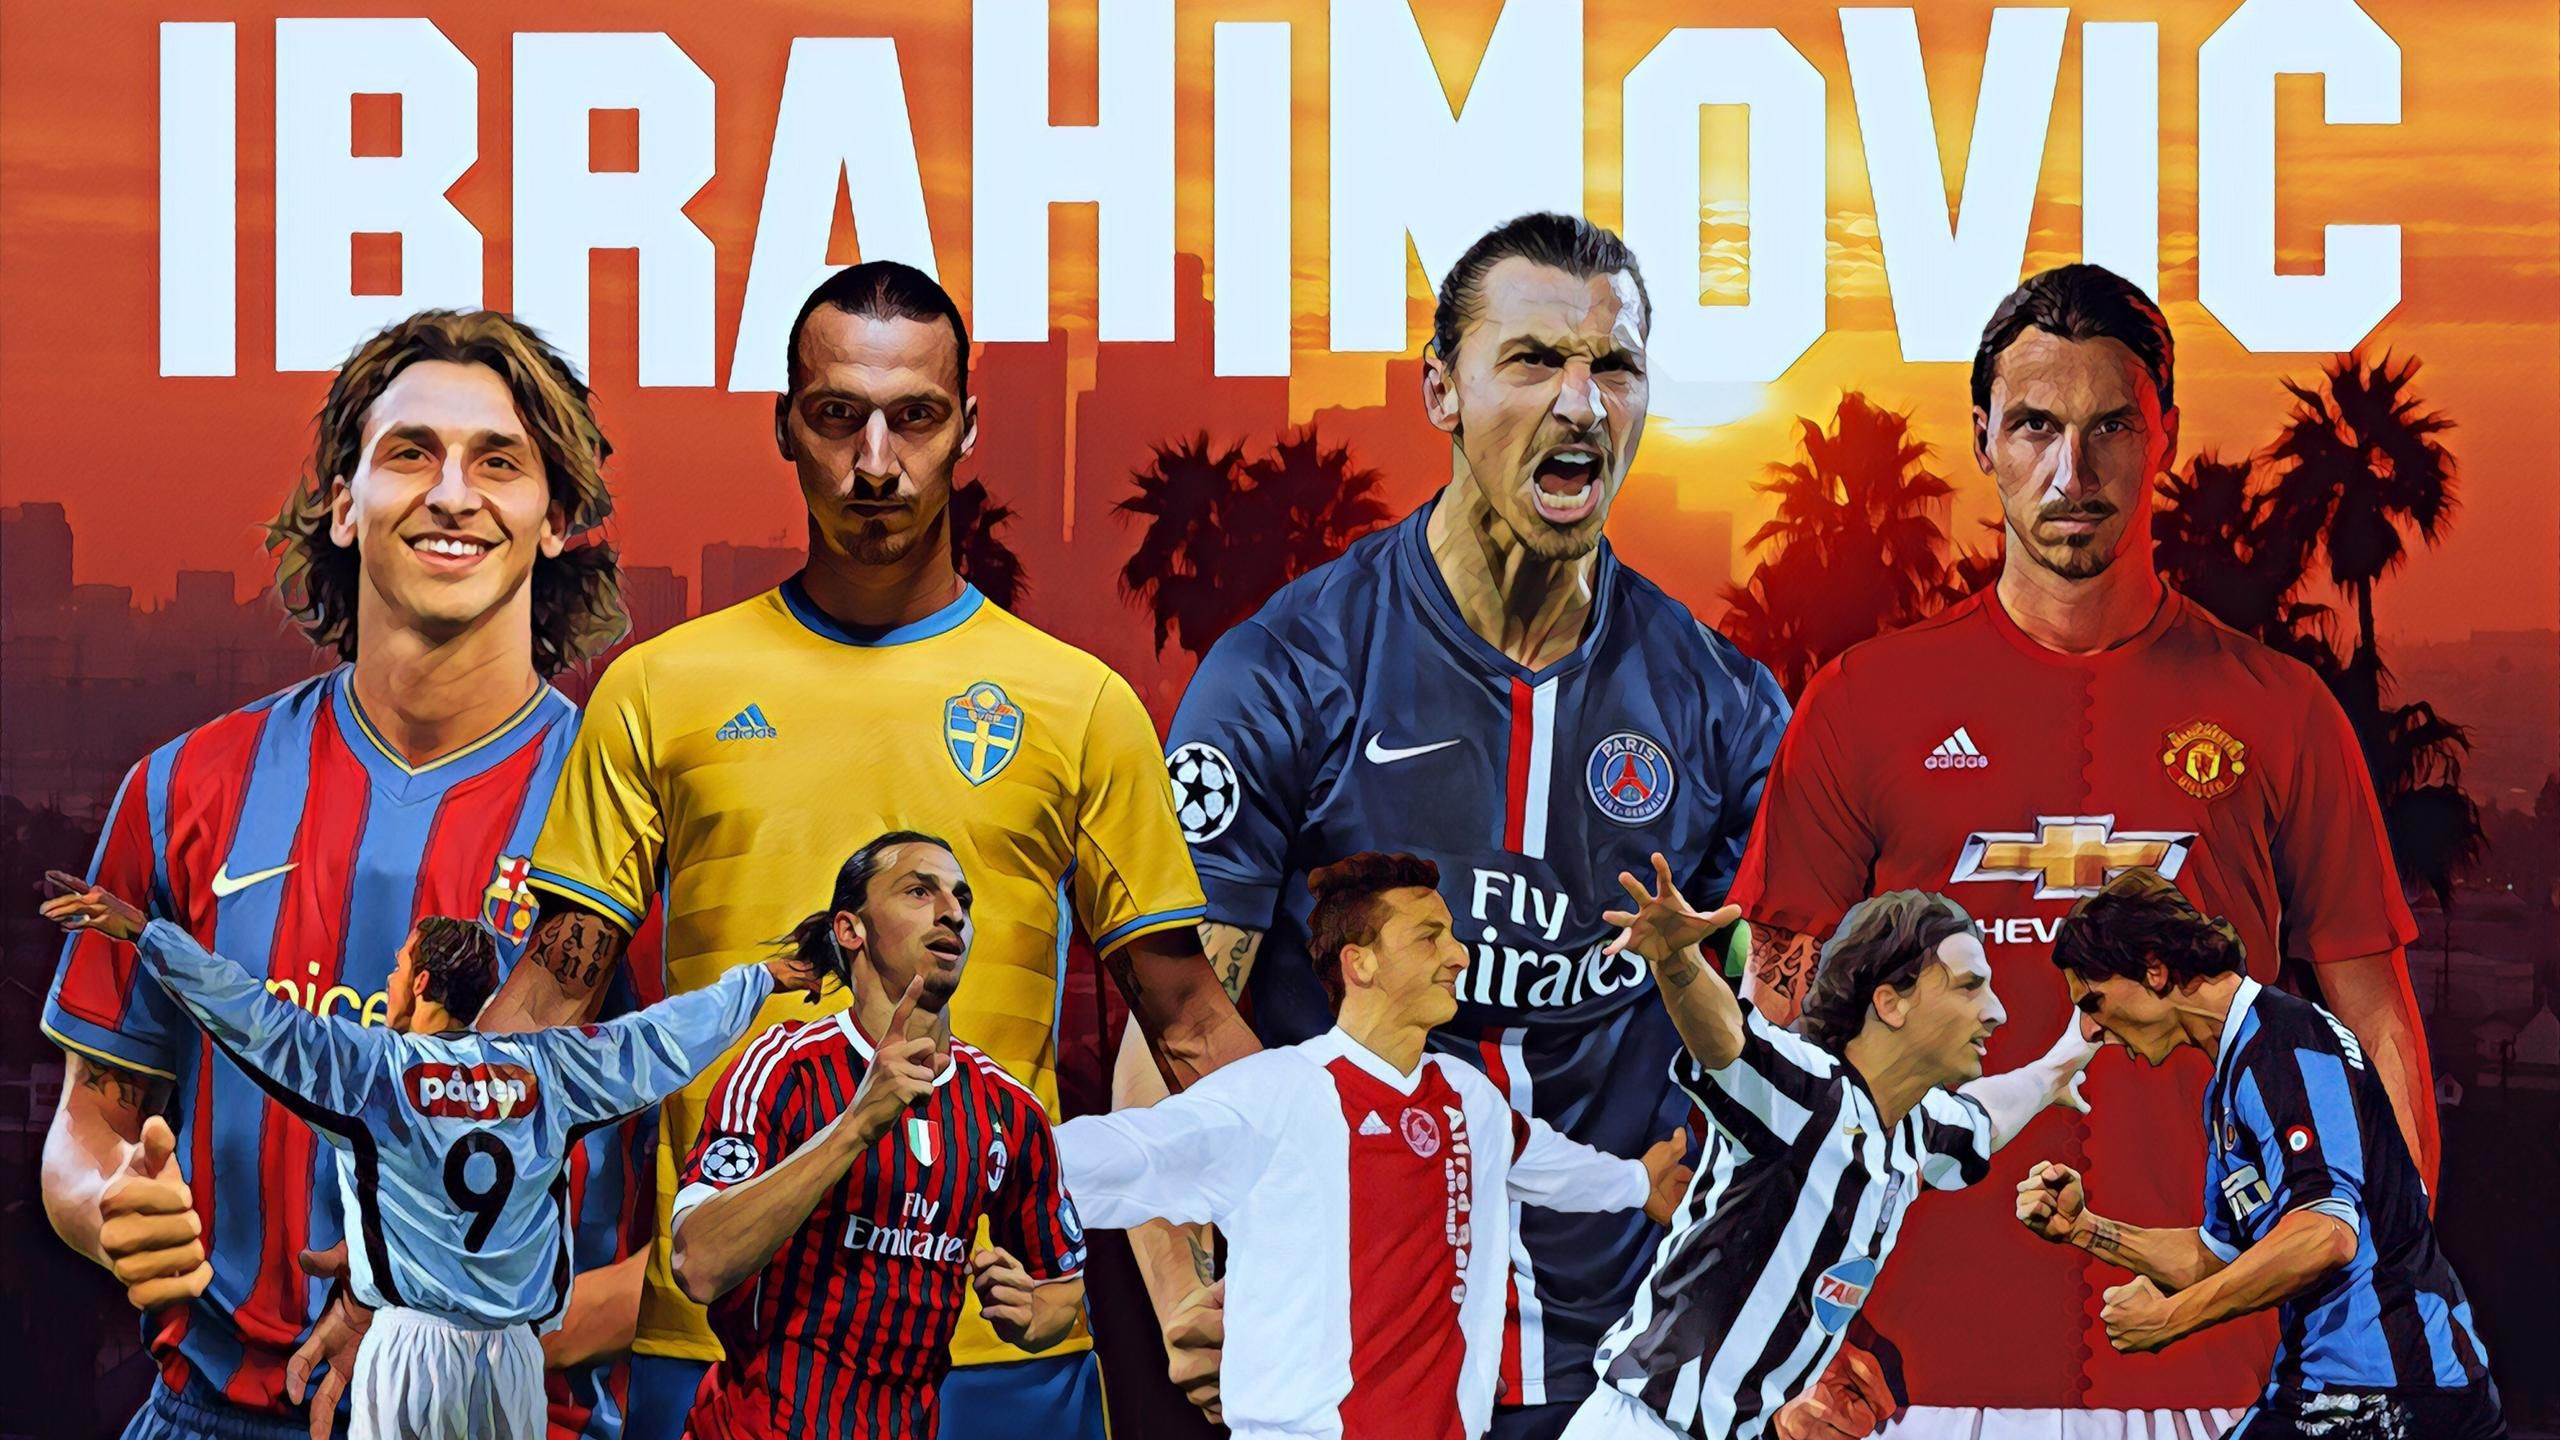 El largo camino del león Ibrahimovic - Eurosport